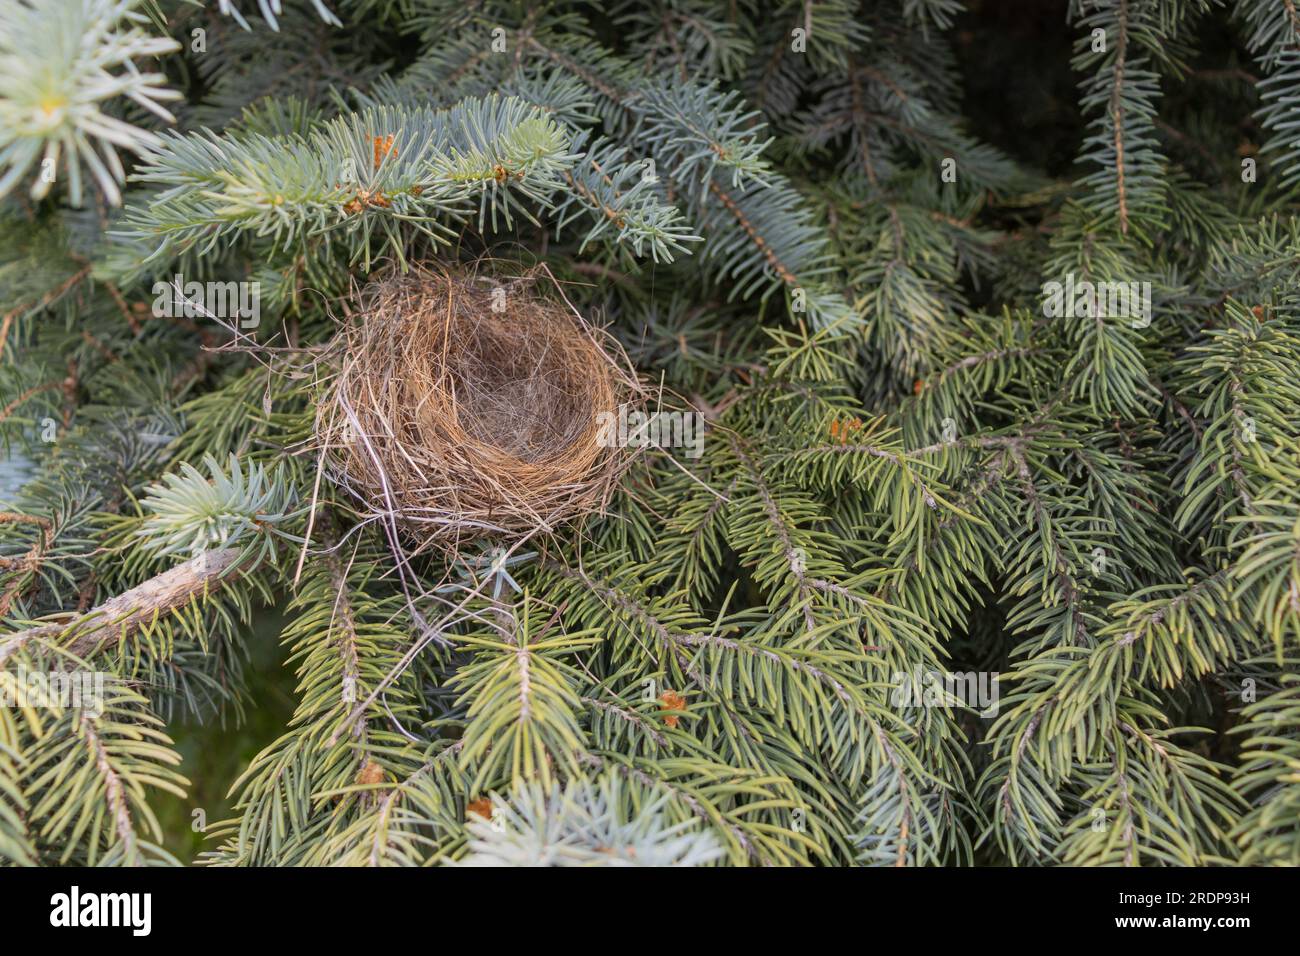 Nido di uccelli vuoto nell'albero di conifere - vista ravvicinata di ramoscelli e erba secchi - niente uova o piccoli uccelli - aghi verdi sullo sfondo - prelevati dall'alto Foto Stock